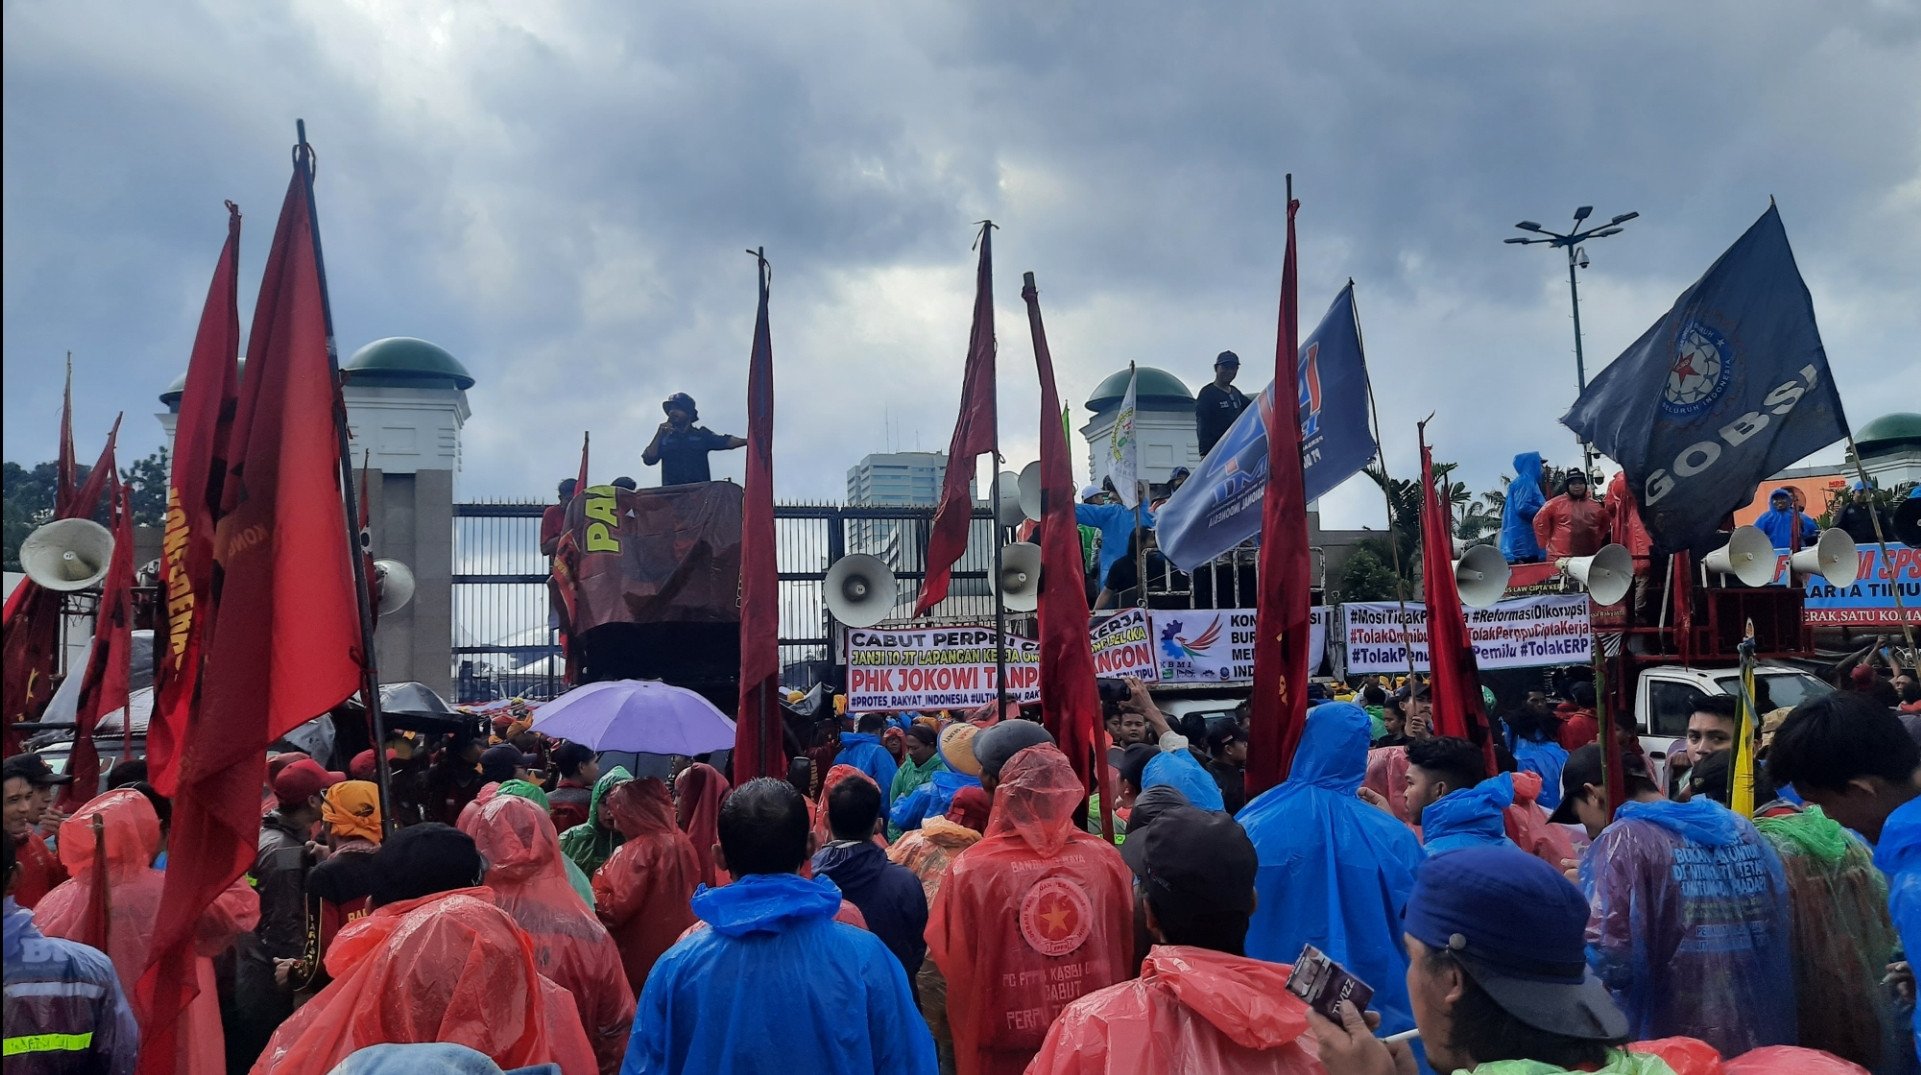 Ribuan Buruh Tetap Demo Tolak Perpu Ciptaker di DPR